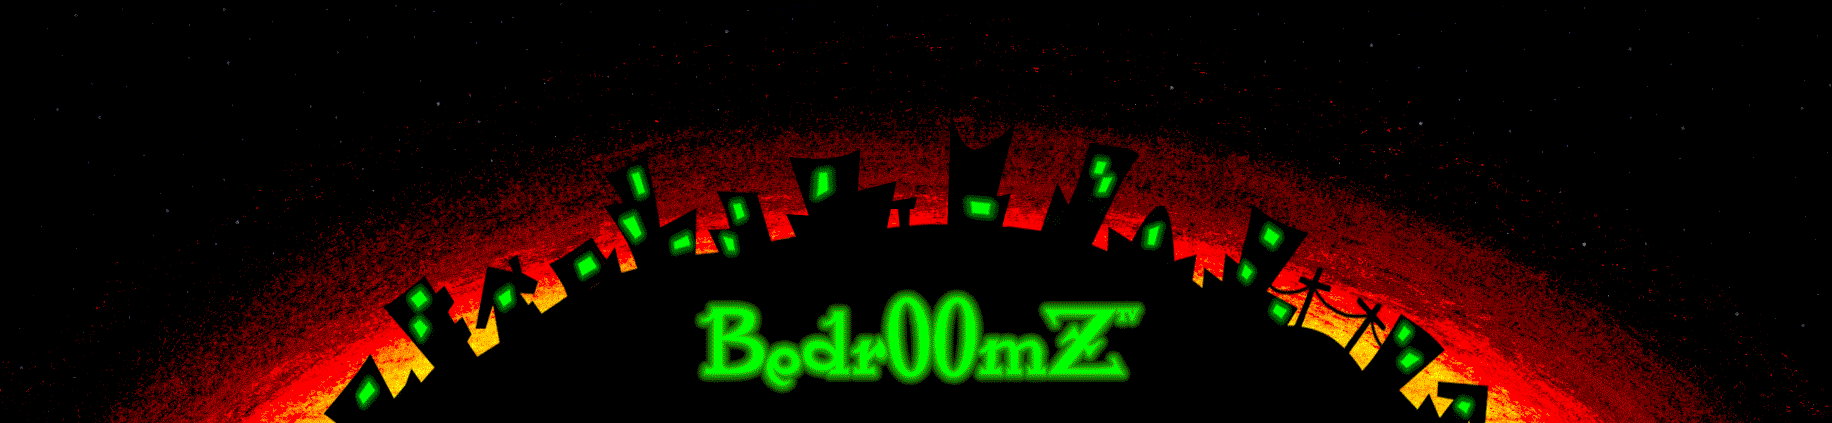 Bedr00mZ Banner